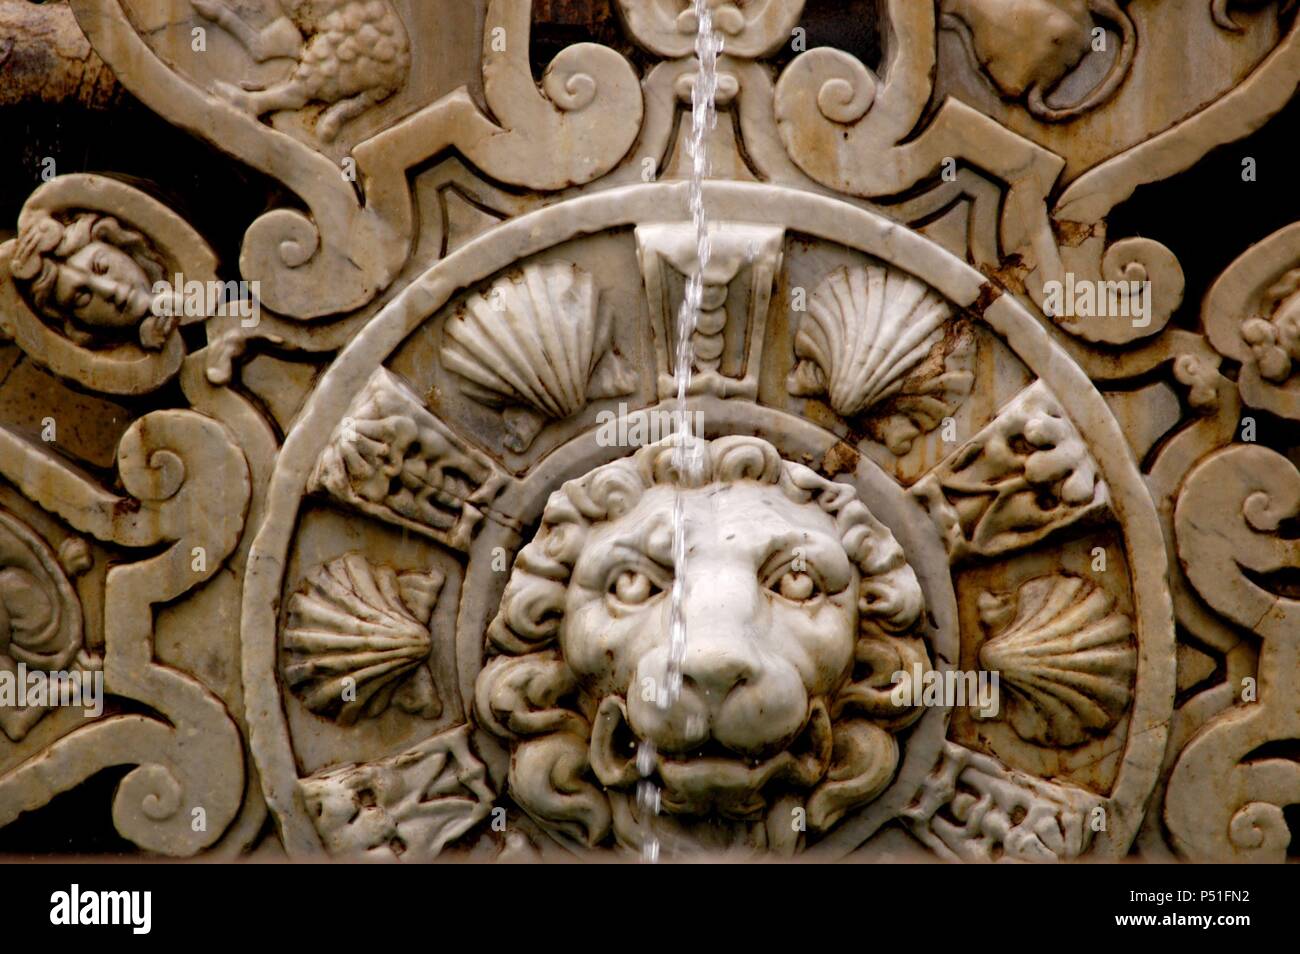 ITALIA. FLORENCIA. Entlasten de un León, perteneciente a la Fuente de Neptuno, Obra realizada por Bartolomeo Ammannati y sus ayudantes Entre 1563 y 1575. Fue mandada construir por Cosimo I y se encuentra ubicada en la Piazza della Signoria. La Toscana. Stockfoto